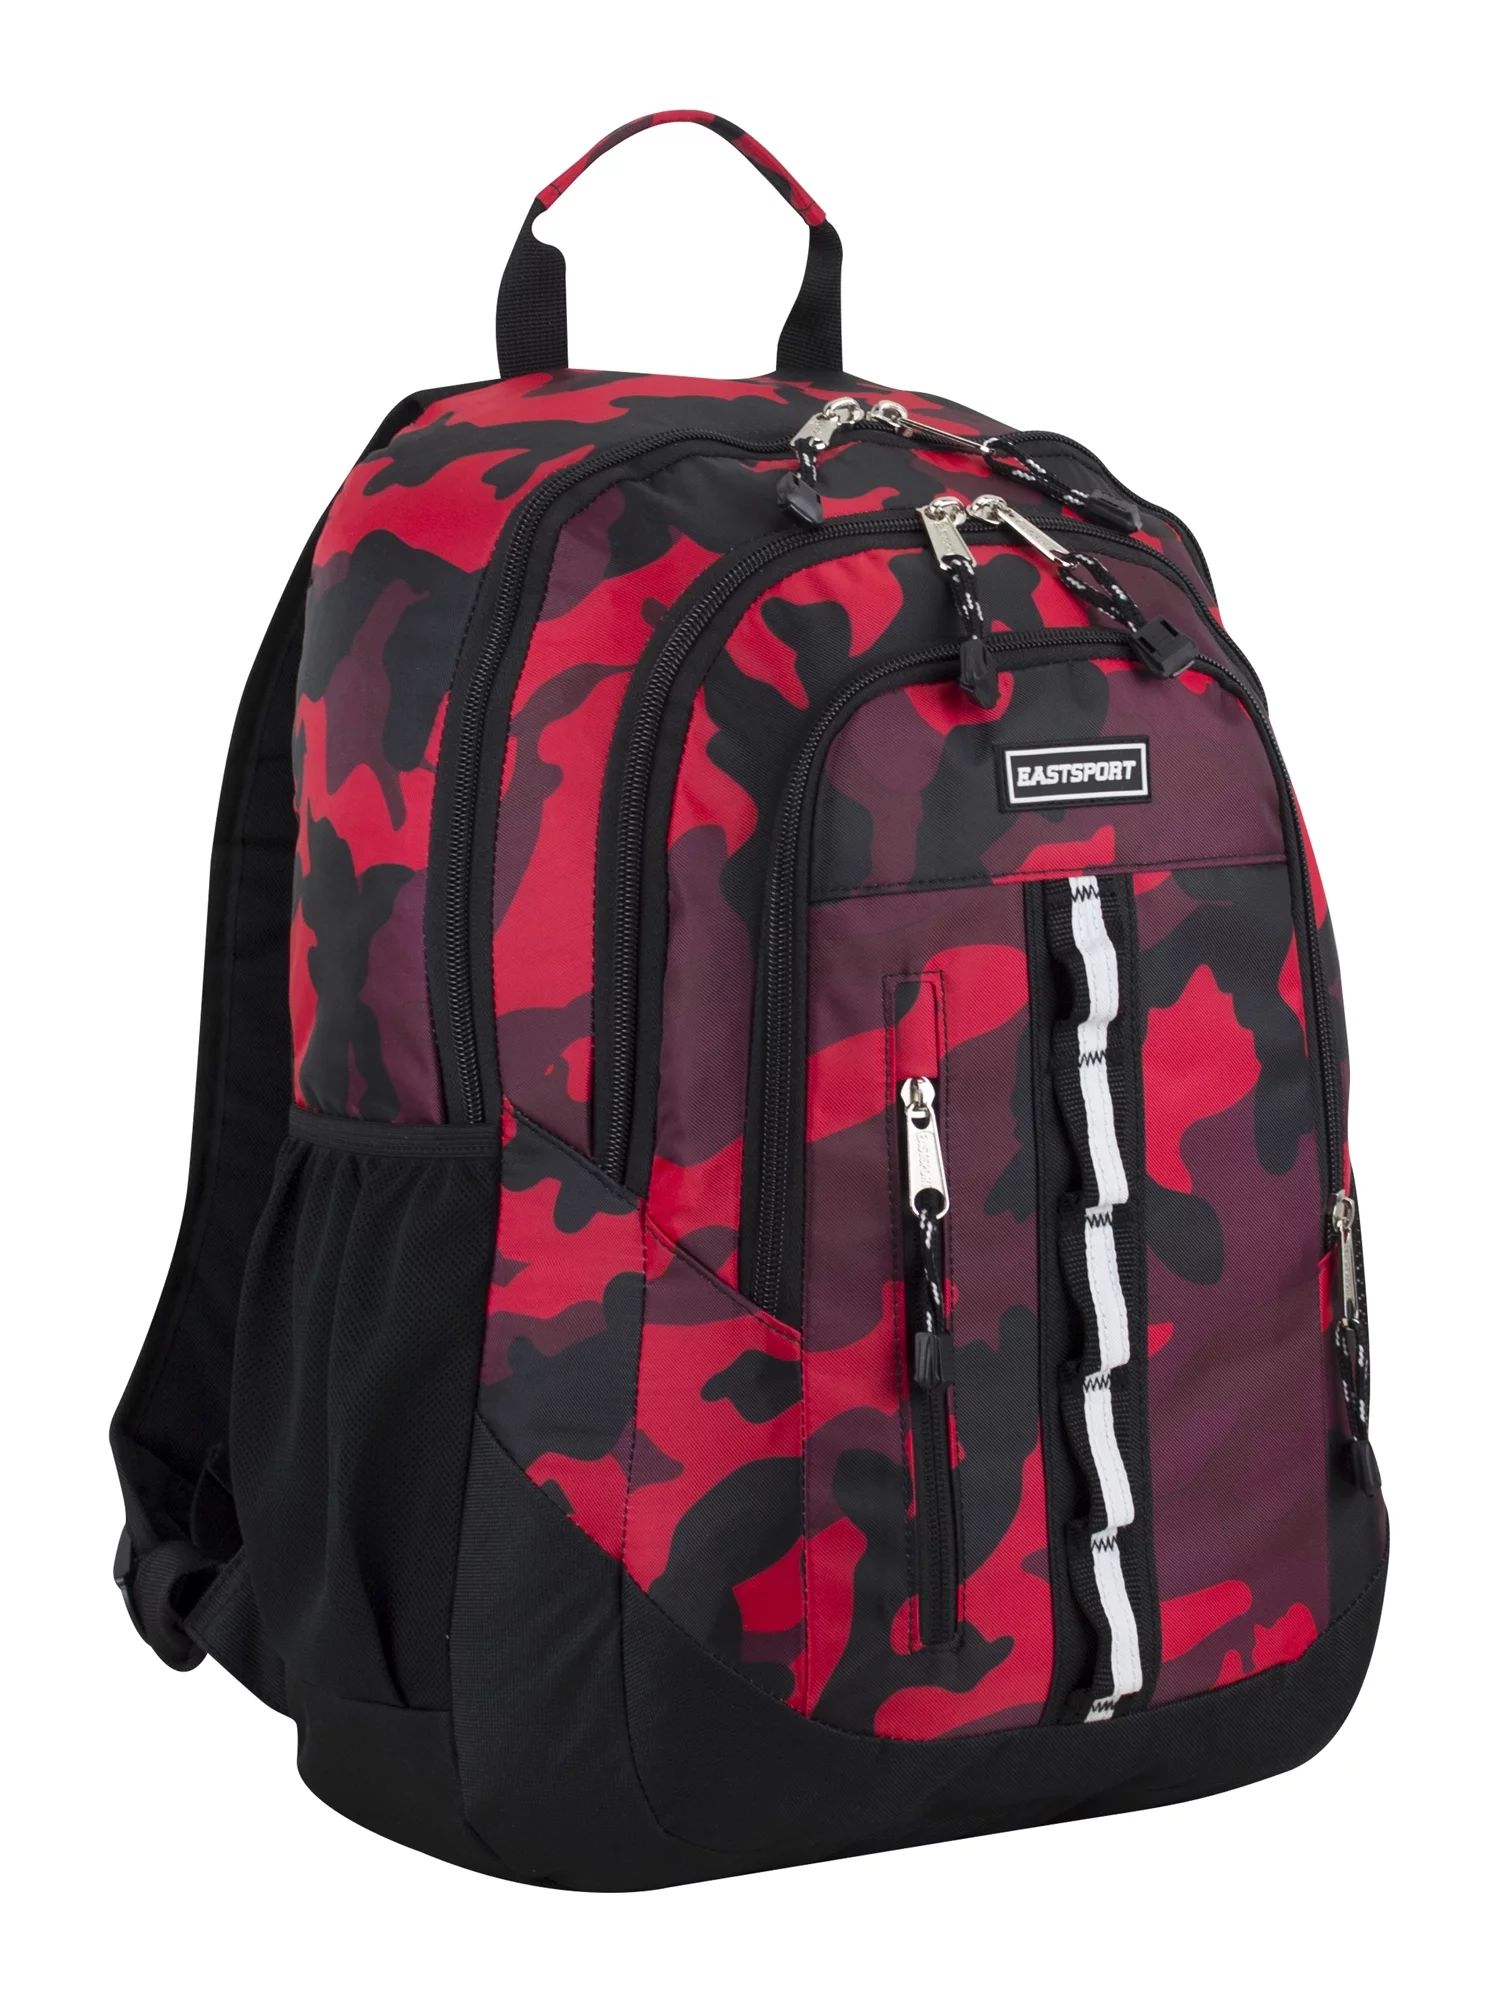 Eastsport Unisex Sport Voltage Backpack, Red Camo - Walmart.com | Walmart (US)